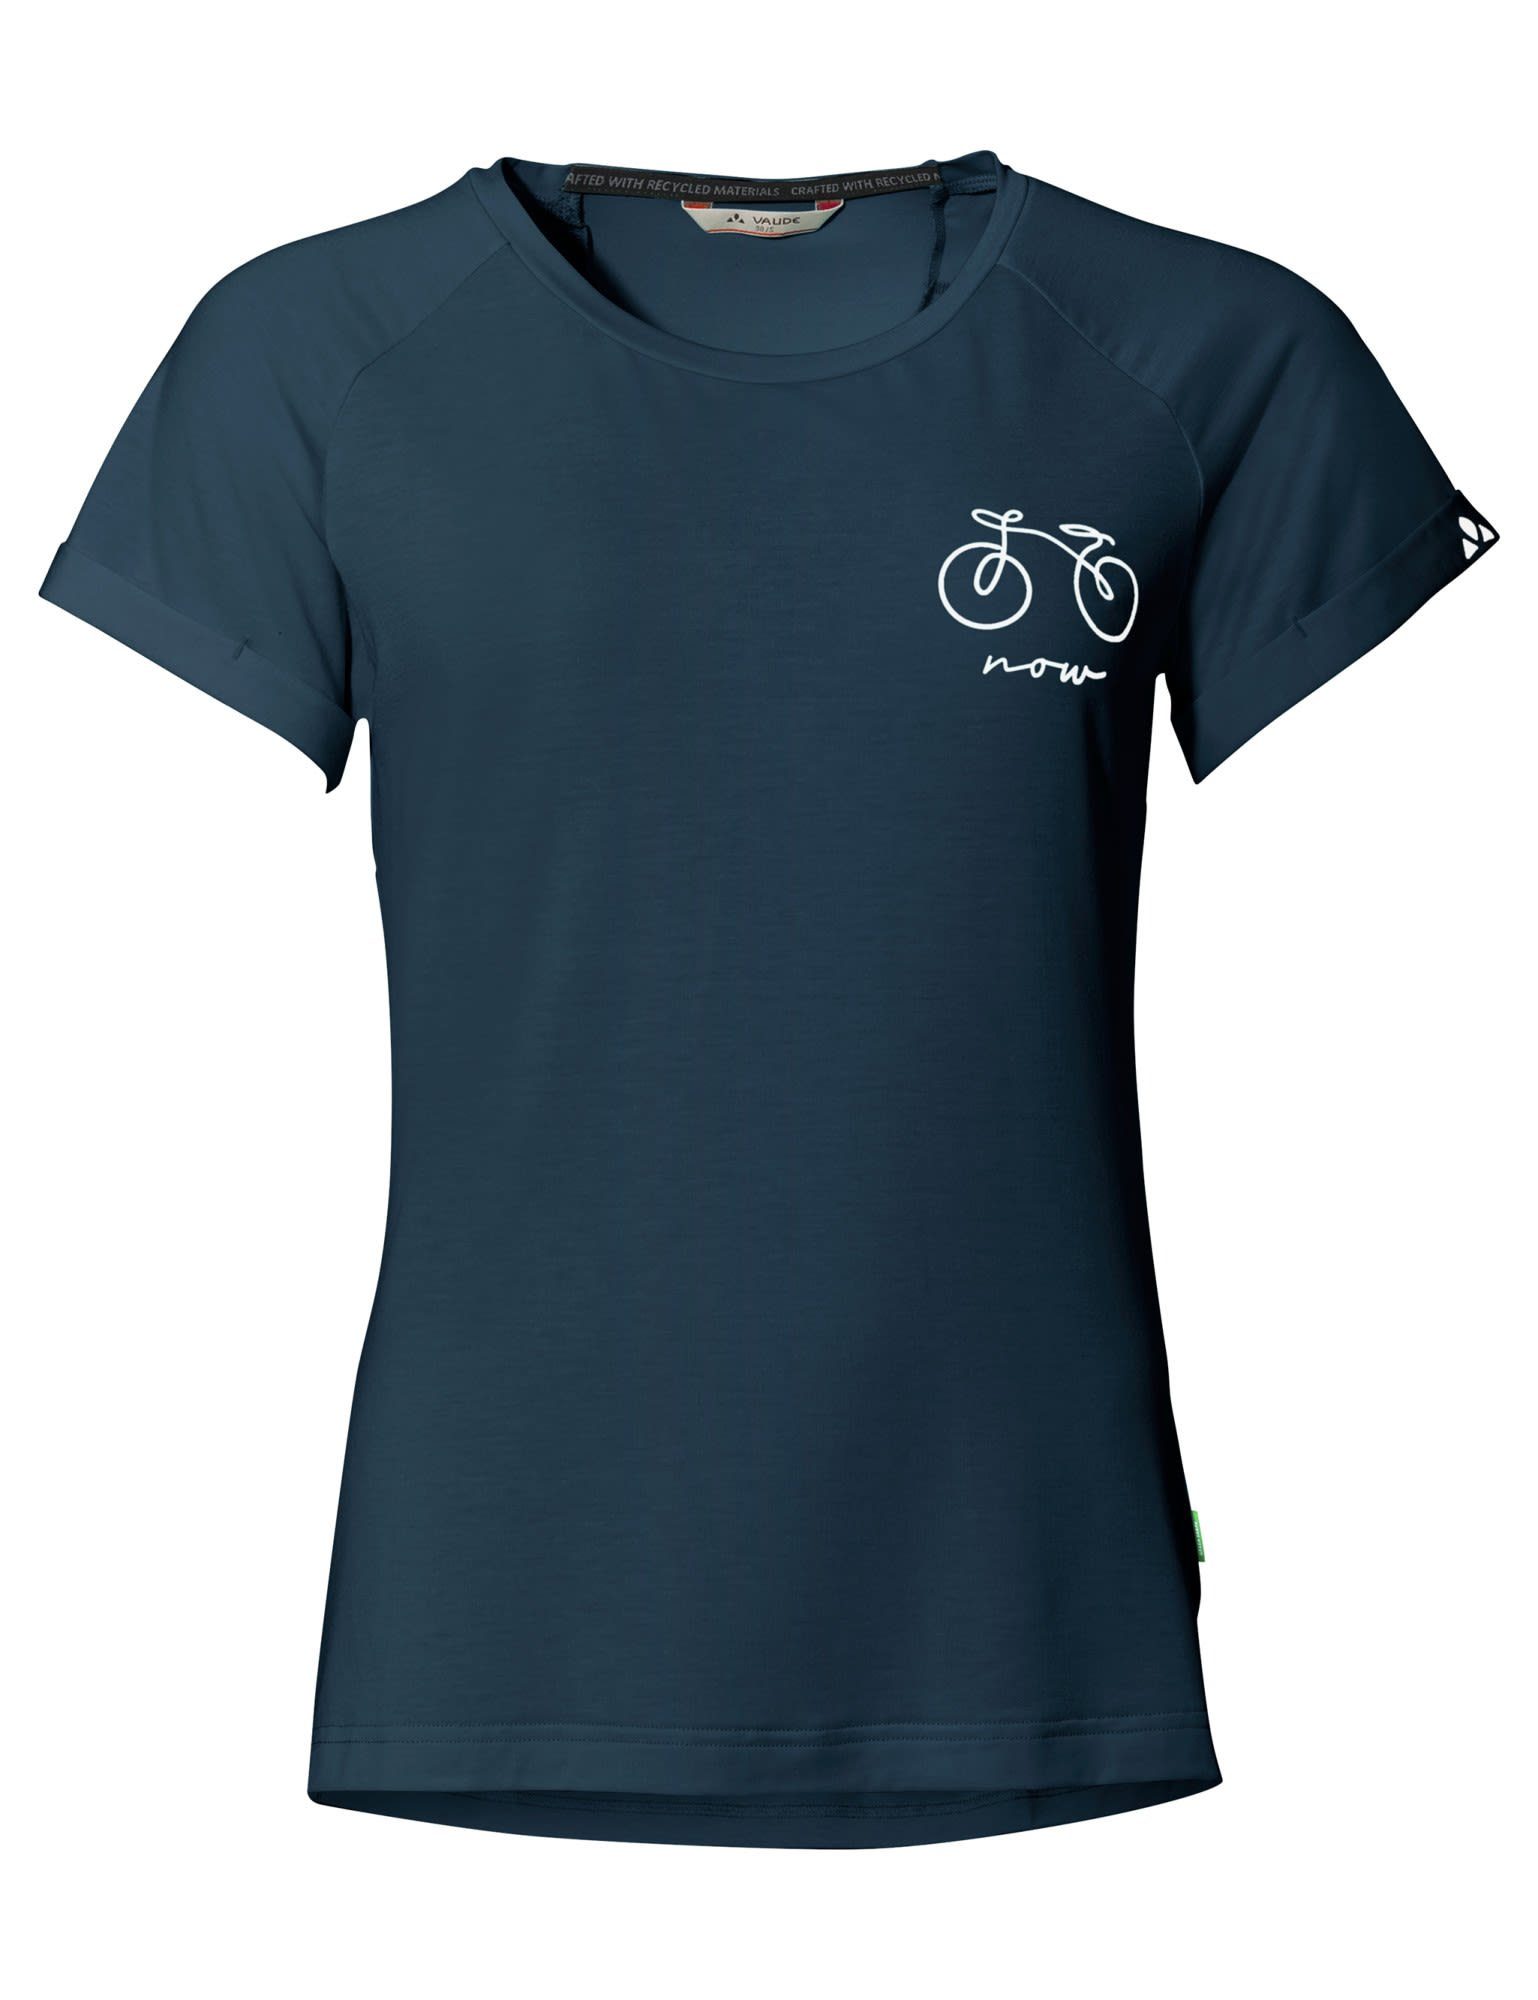 Vaude Sea T-shirt Dark Cyclist Damen 2 VAUDE Womens Kurzarm-Shirt T-Shirt